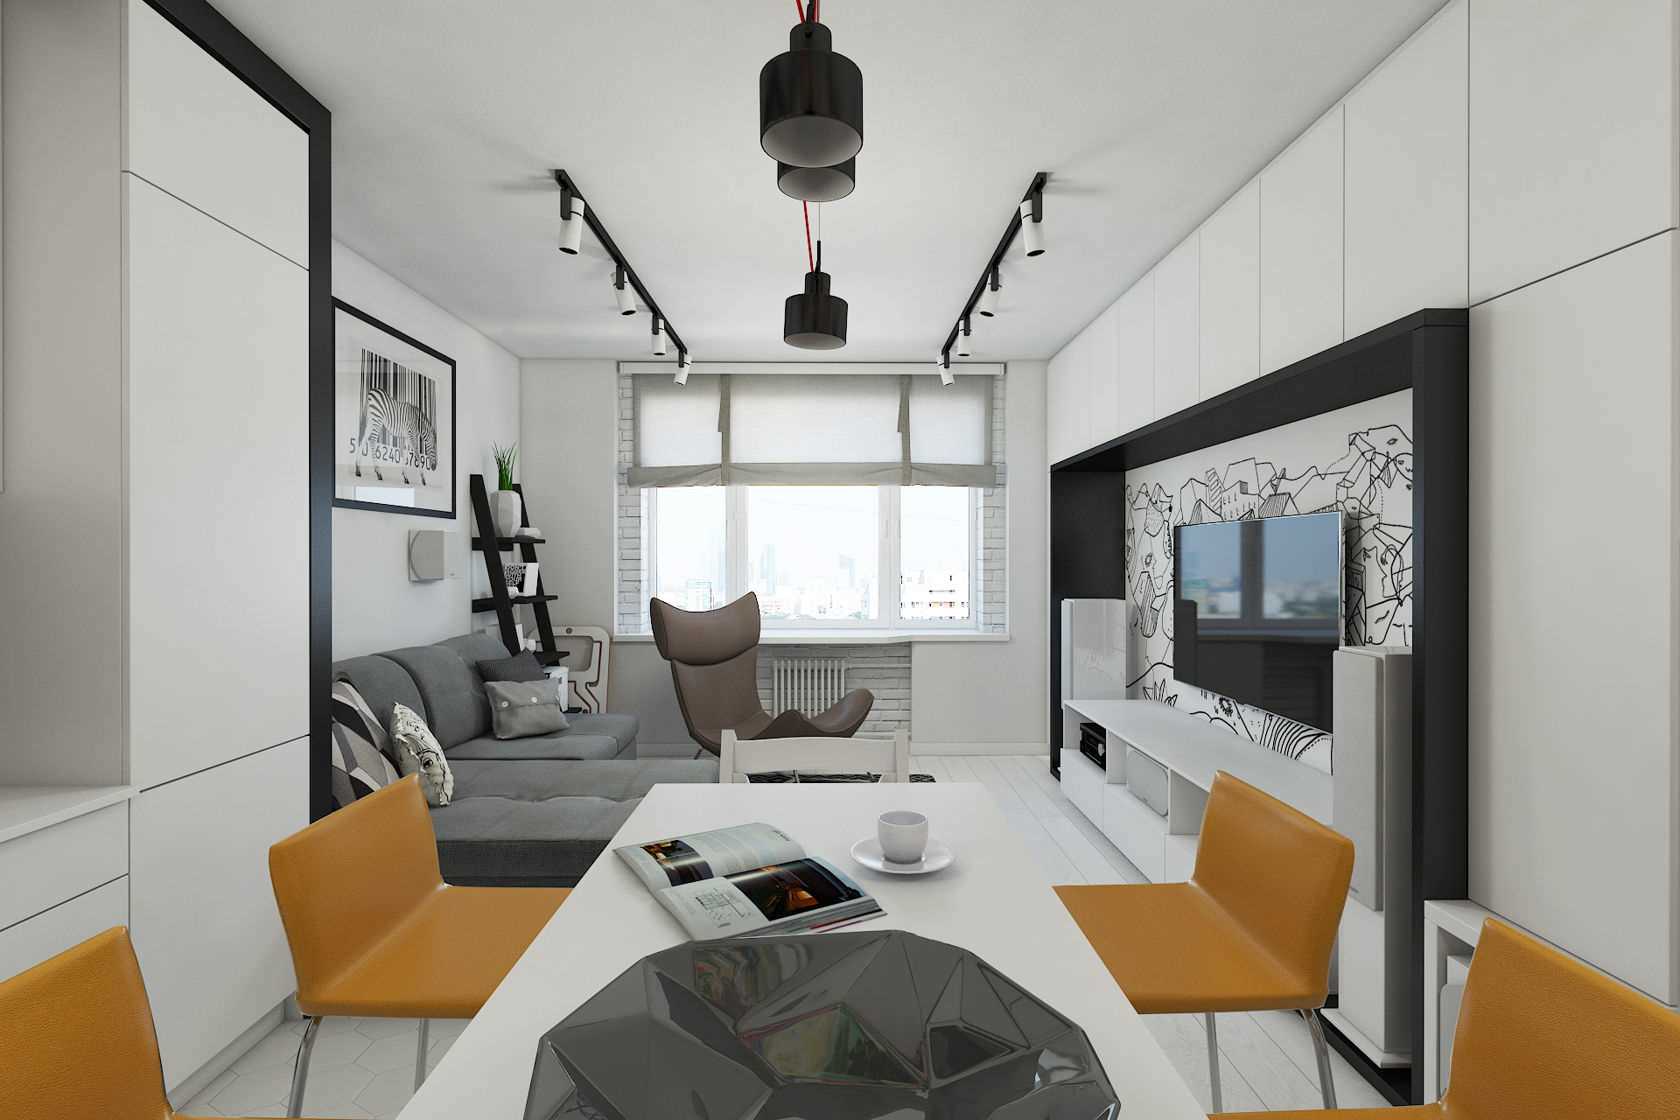 Квартира 50 кв. м. – примеры лучшего дизайна и варианты использования свободной планировки (80 фото)